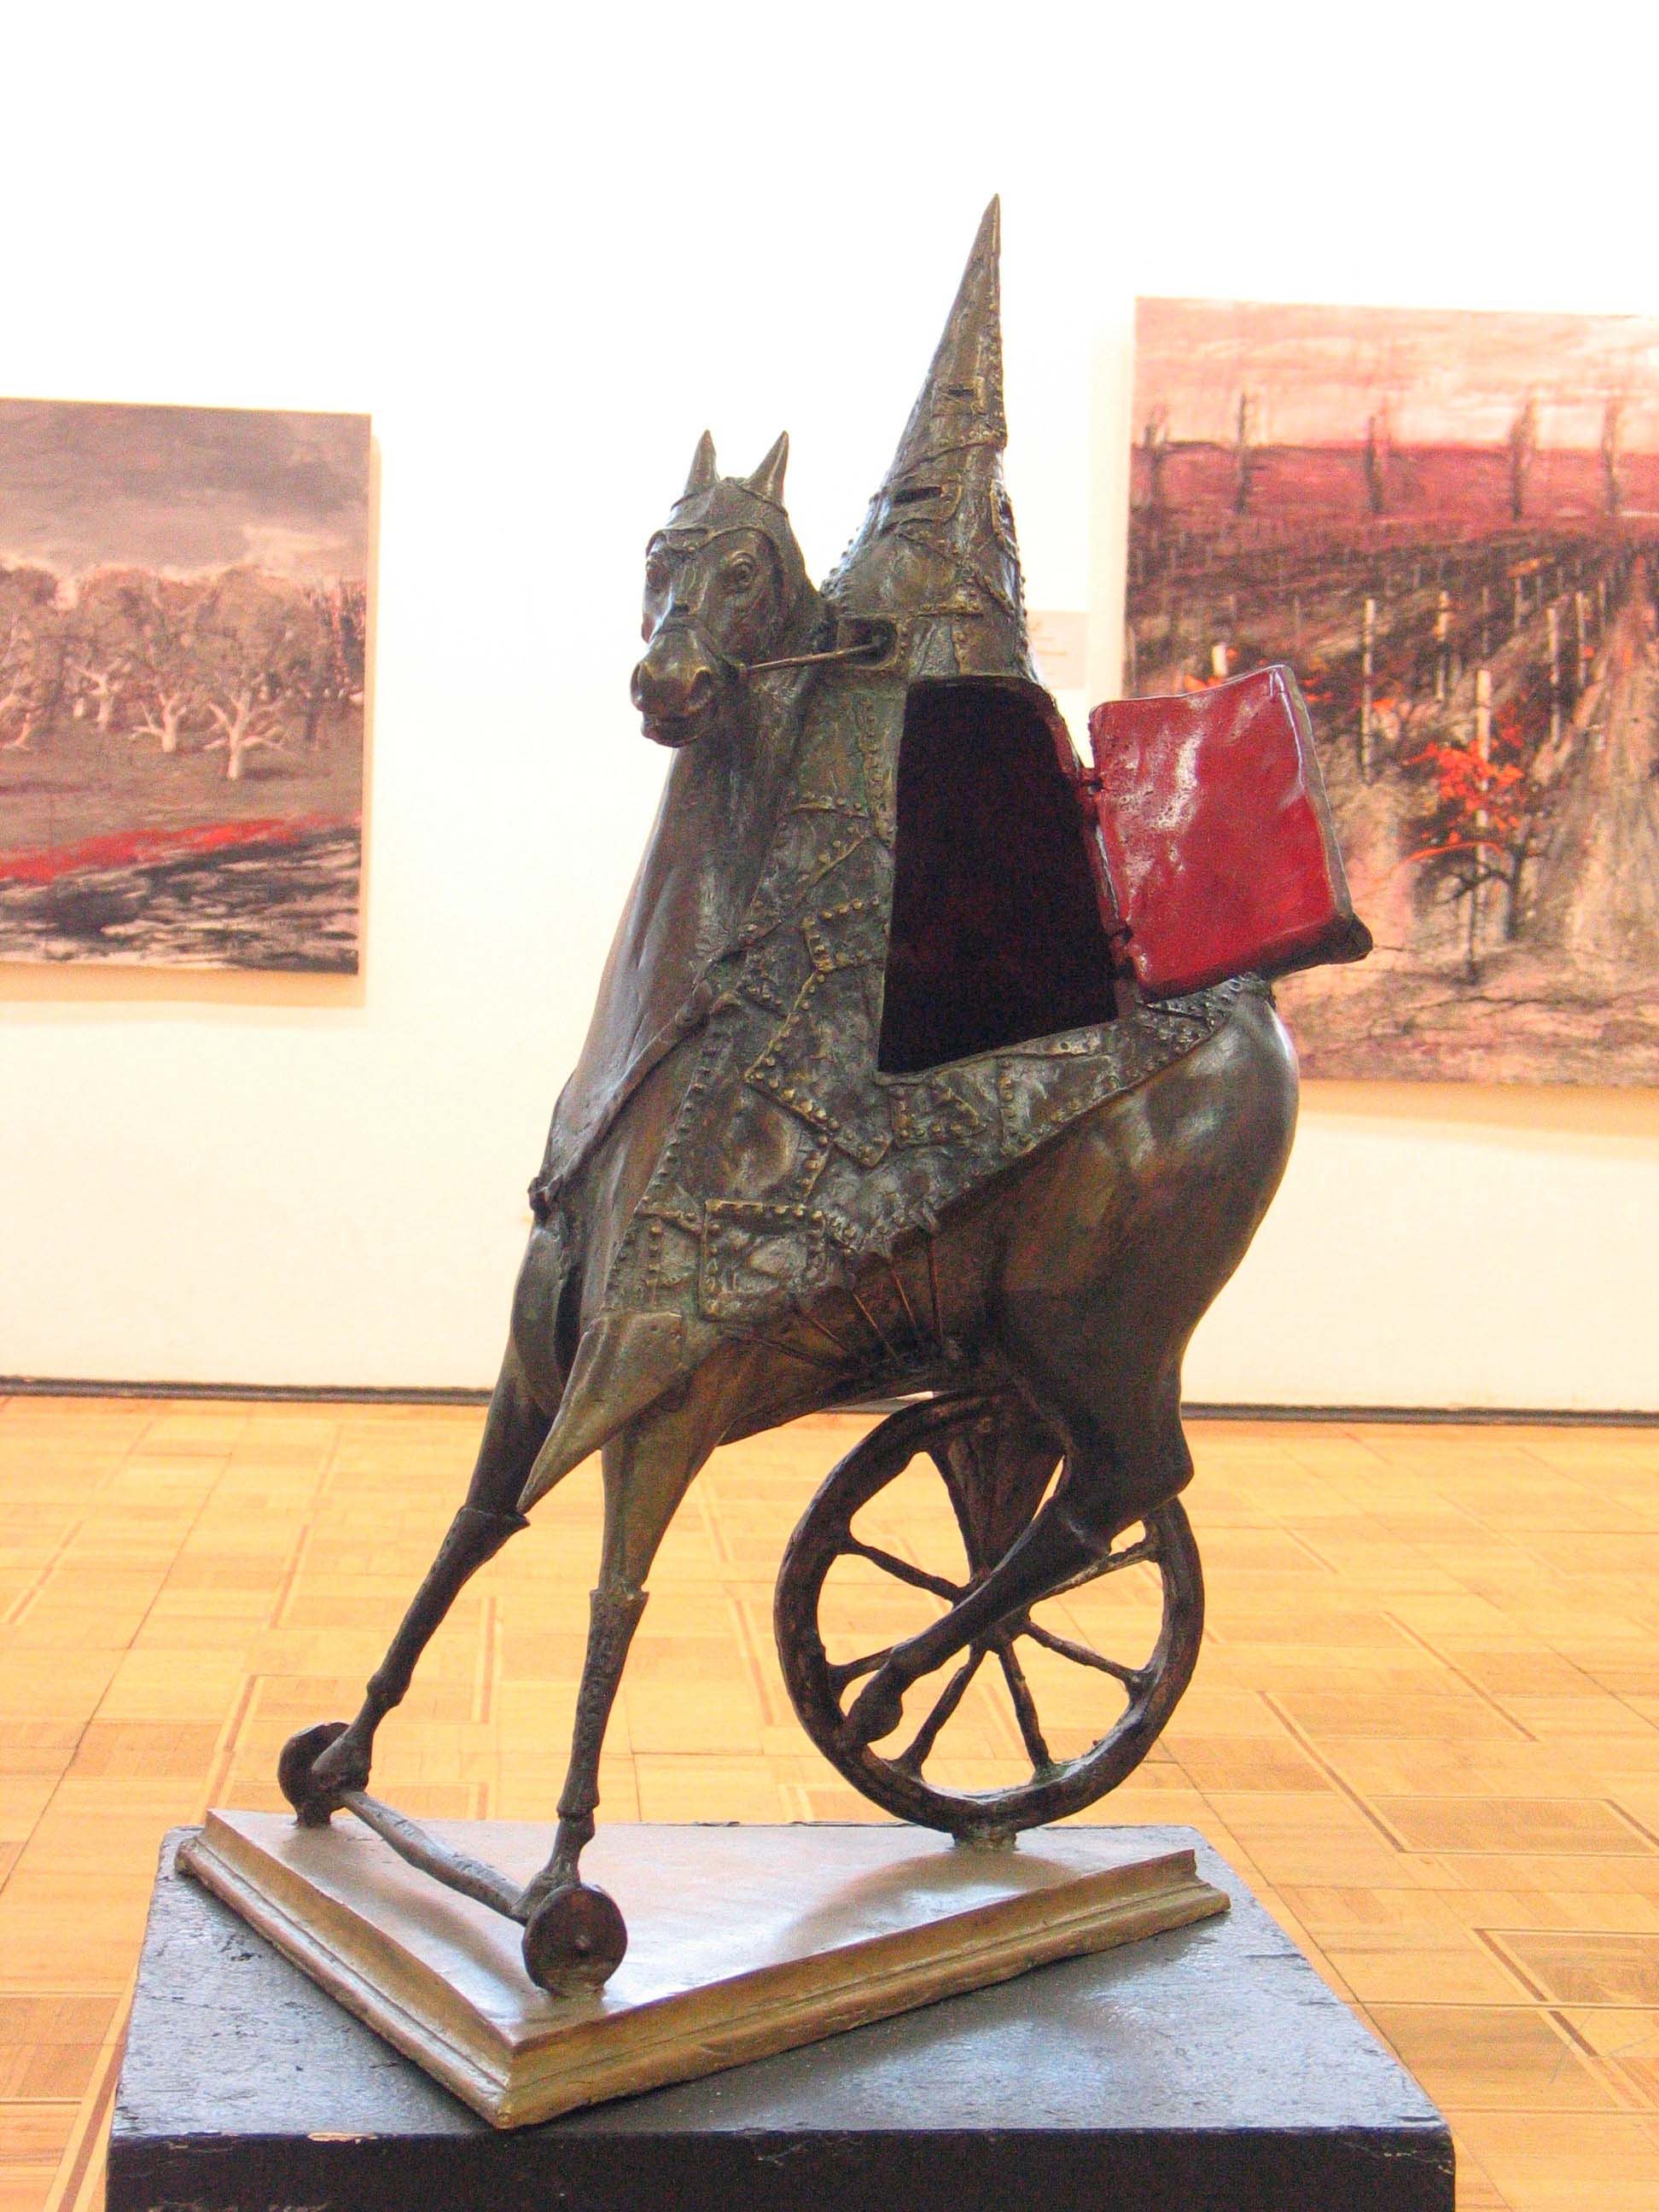 Андрей Асерьянц. "Рыцарь", 2004. Бронза, высота 50 см. Фото из архива Андрея Асерьянца